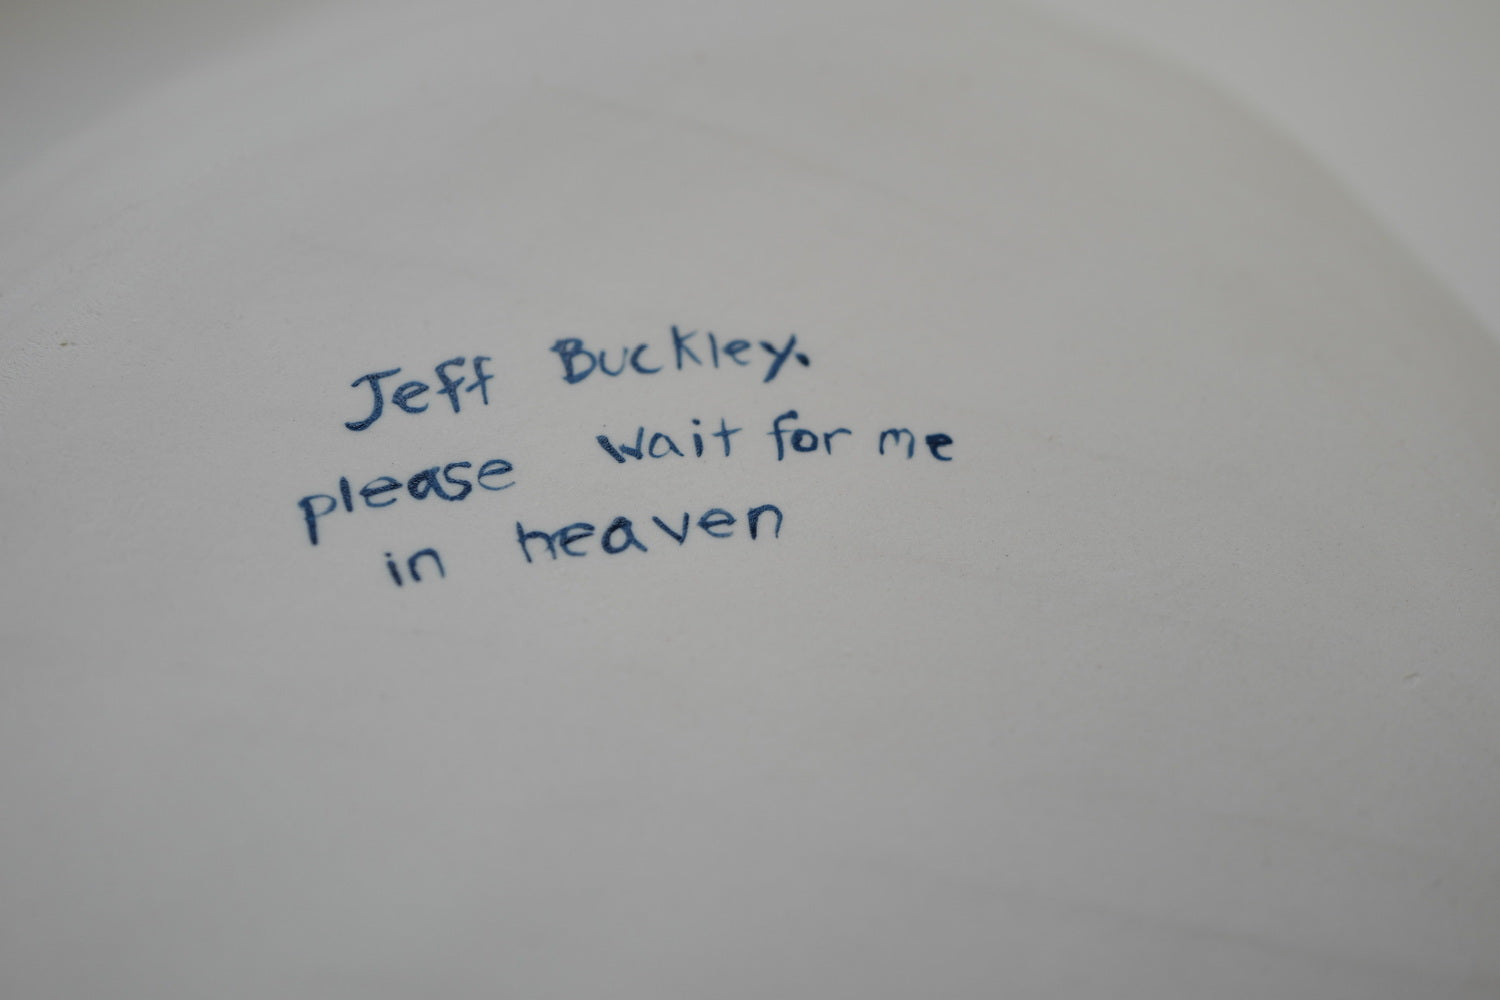 Jeff Buckley, please wait for me in heaven